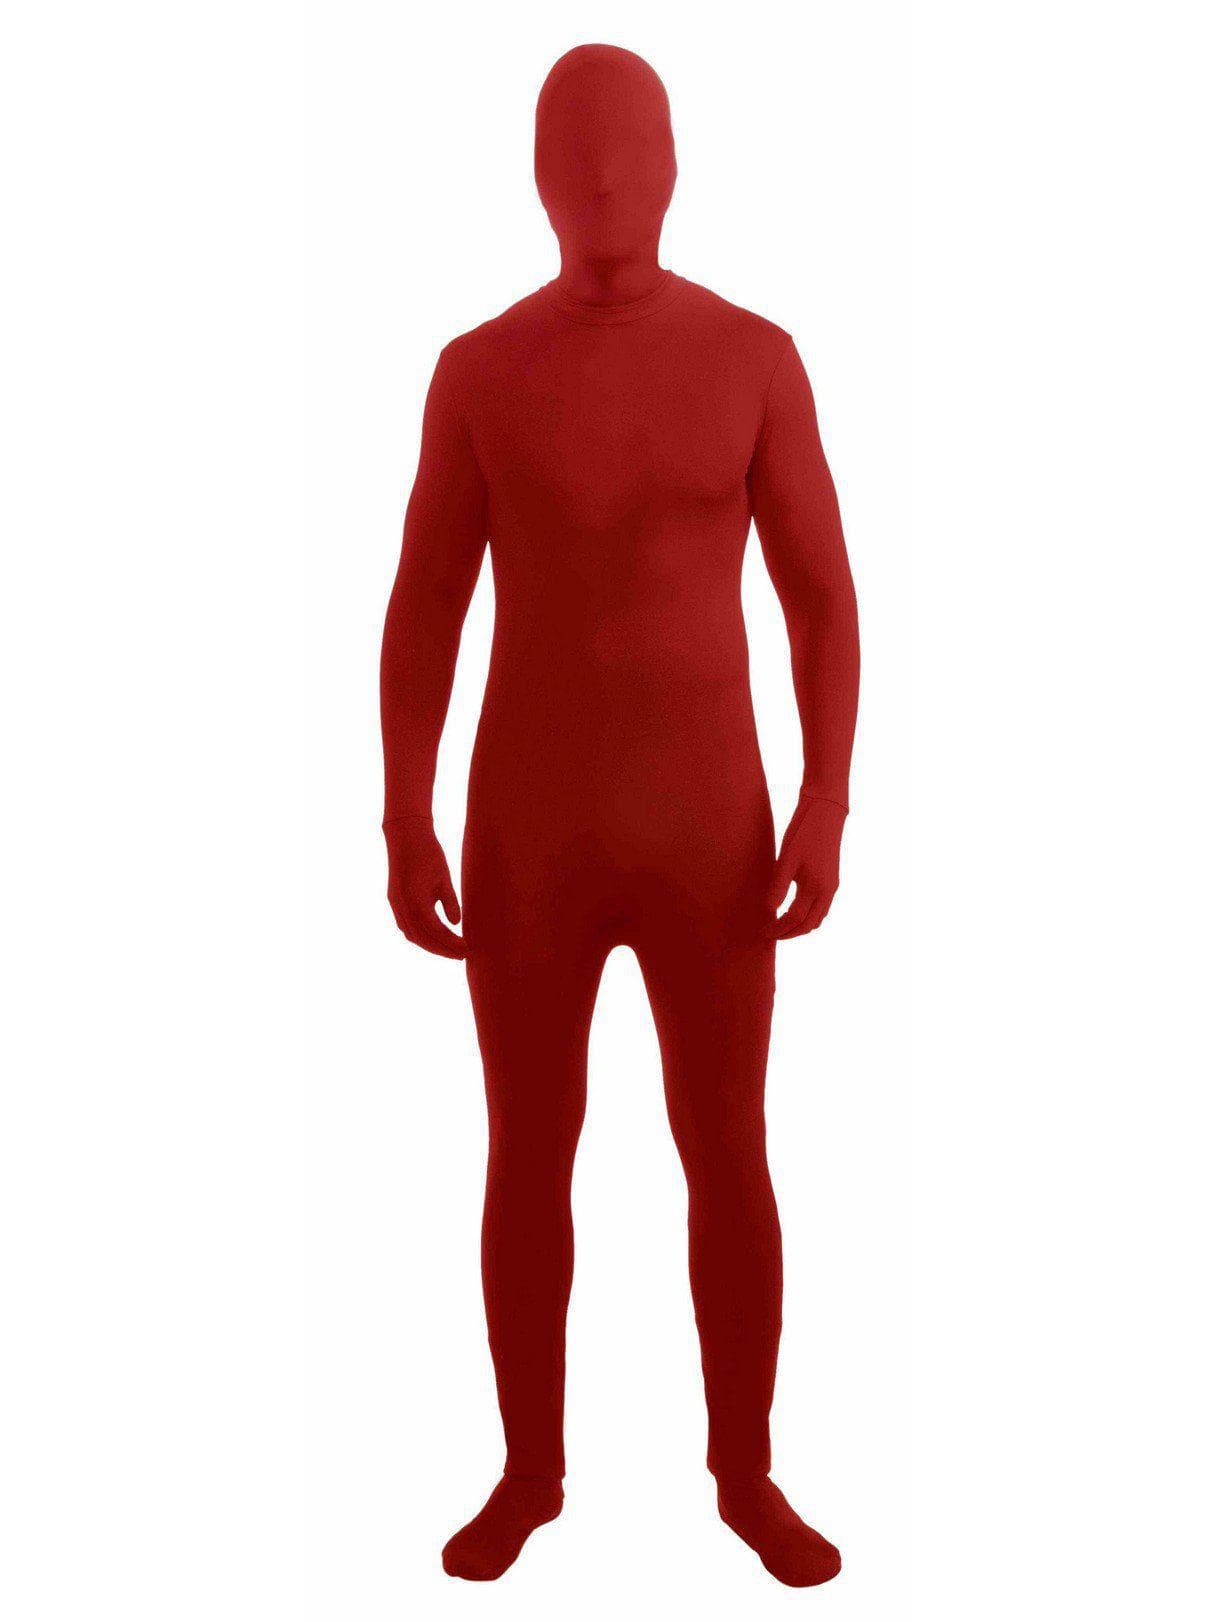 Adult Red Skinsuit Costume - costumes.com